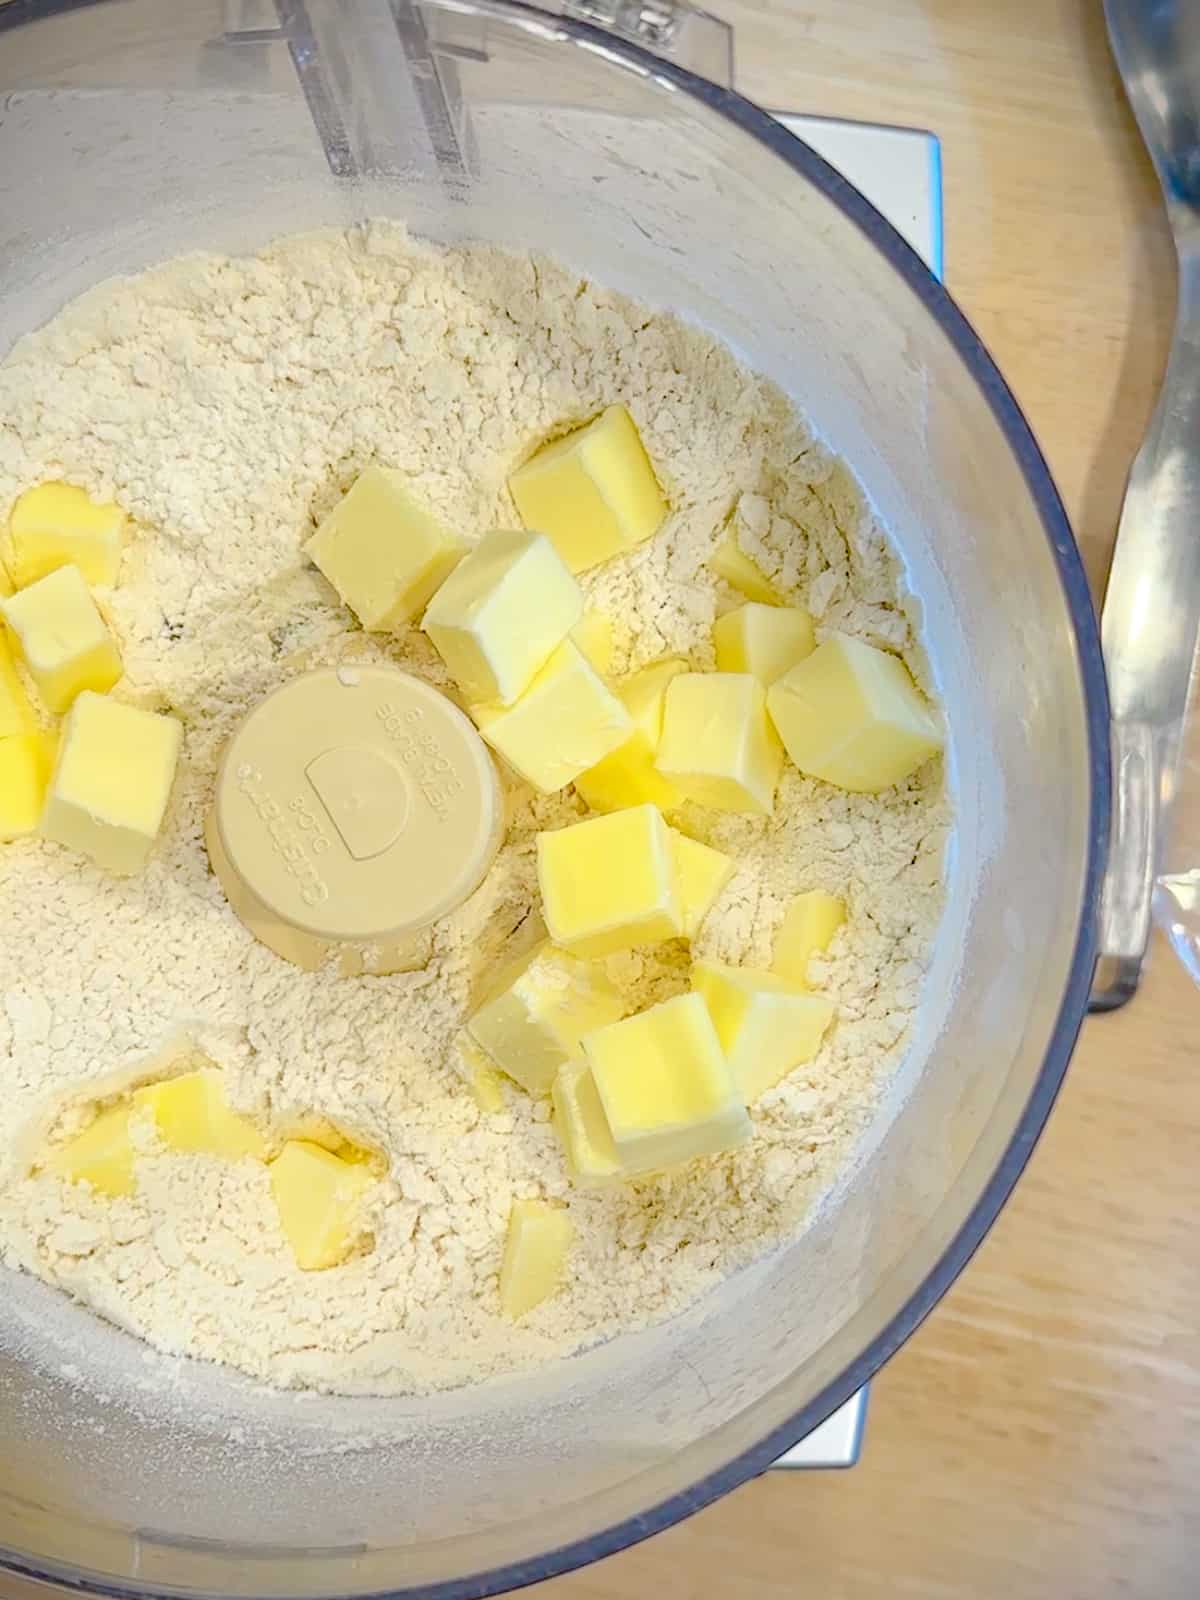 Adding flour and kosher salt to make pie dough.